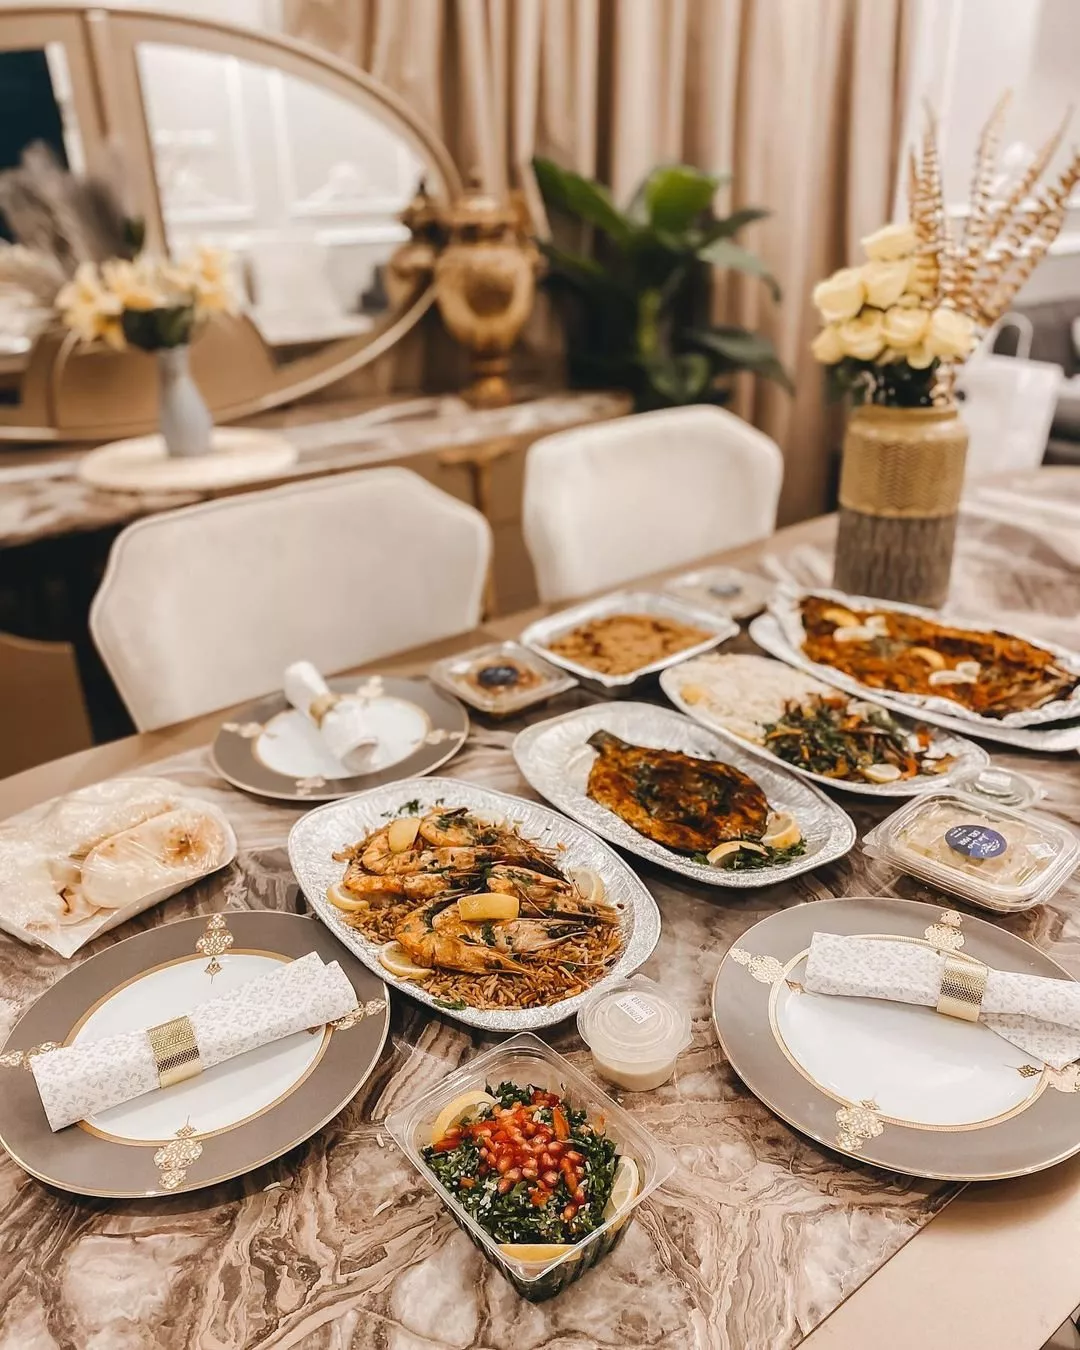 أفضل مطاعم مأكولات بحرية في الرياض تضمن لكِ تجربة أطباق لذيذة